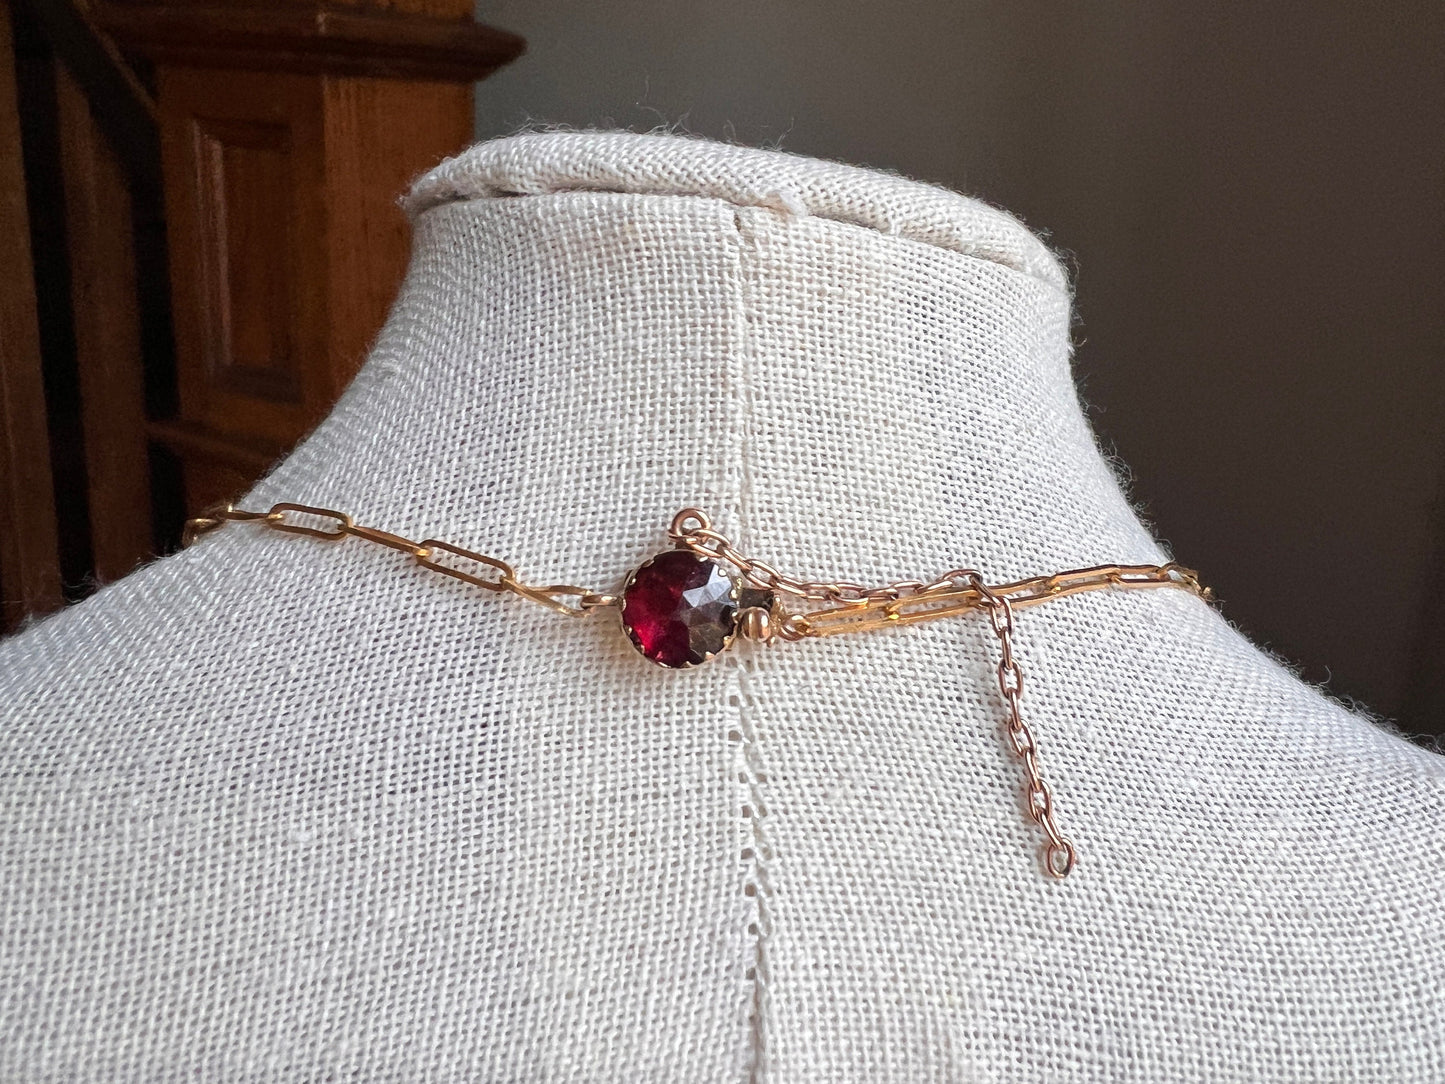 French VICTORIAN Perpignan GARNET Half Riviere Necklace 18k Gold Chain Antique Hallmark Gemset Clasp Purple Berry Red Neckmess Neckstack